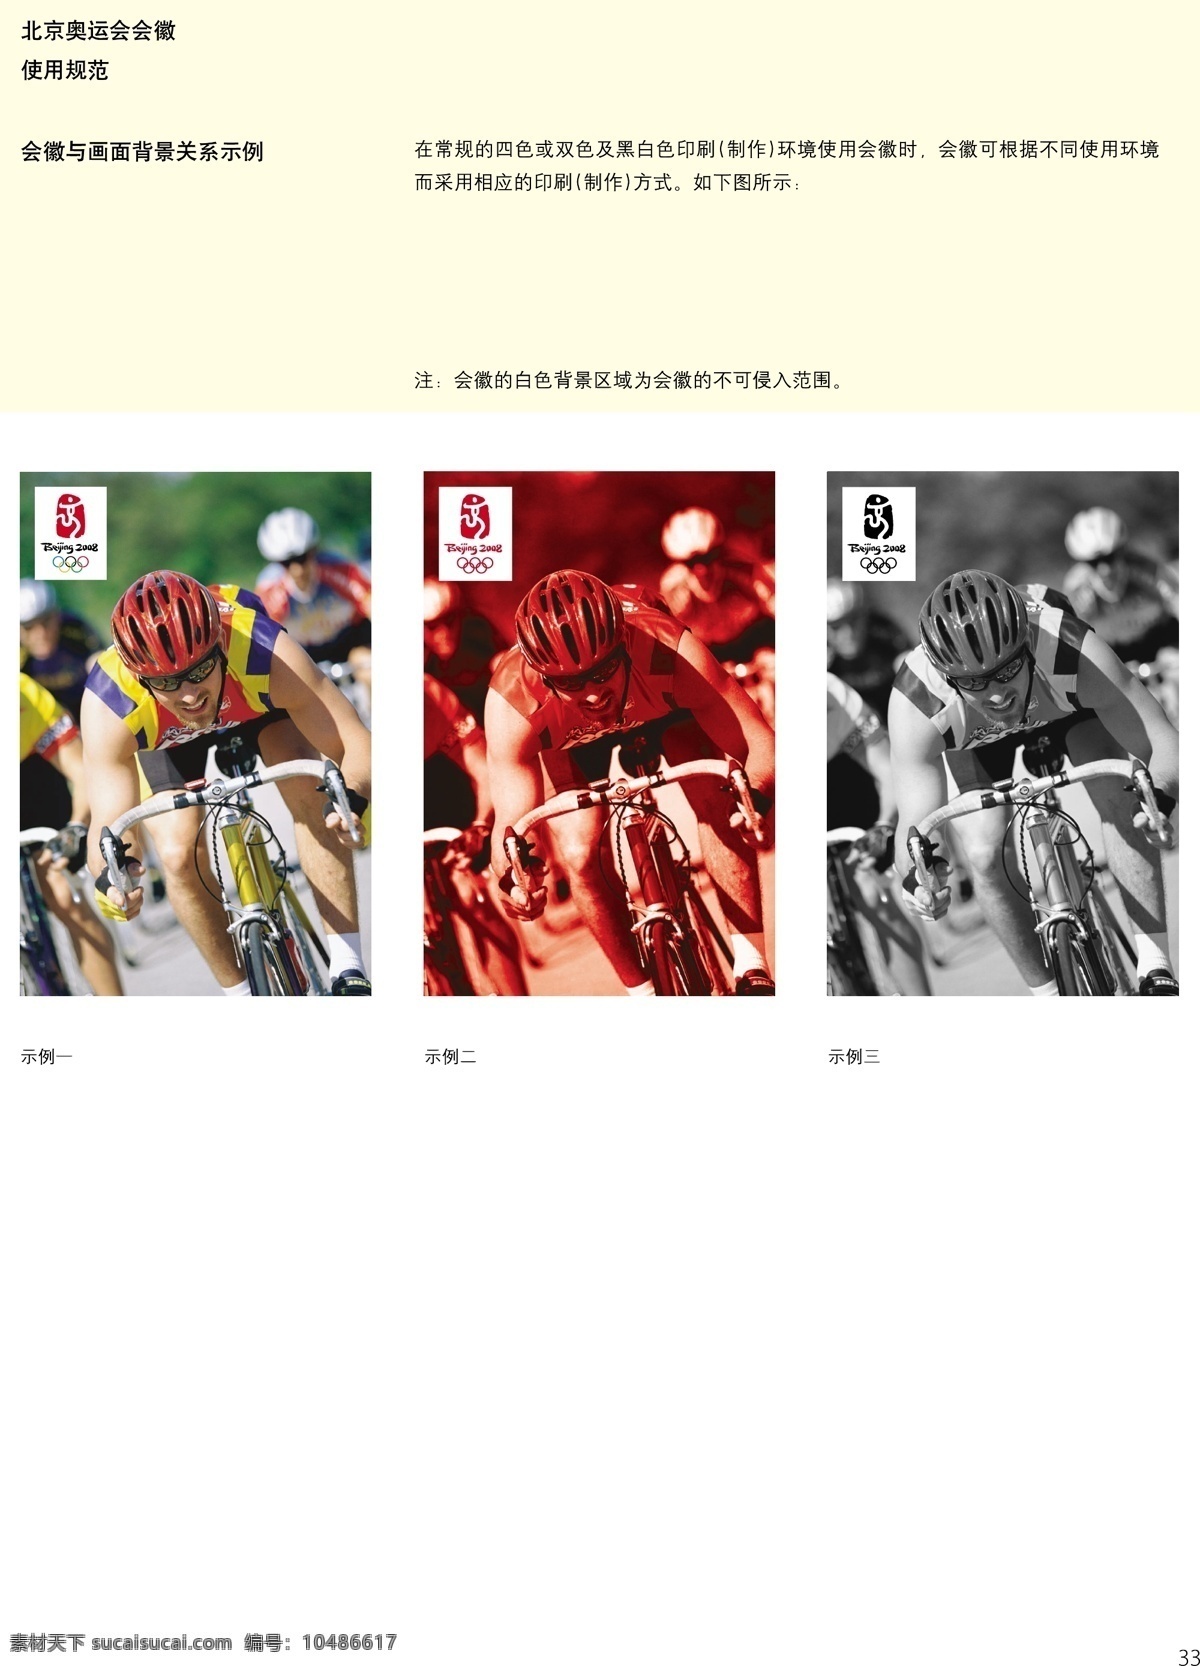 北京 2008 年 奥运 会徽 规范 管理 手册 中文版 奥运会 管理手册 标识标志图标 公共标识标志 矢量图库